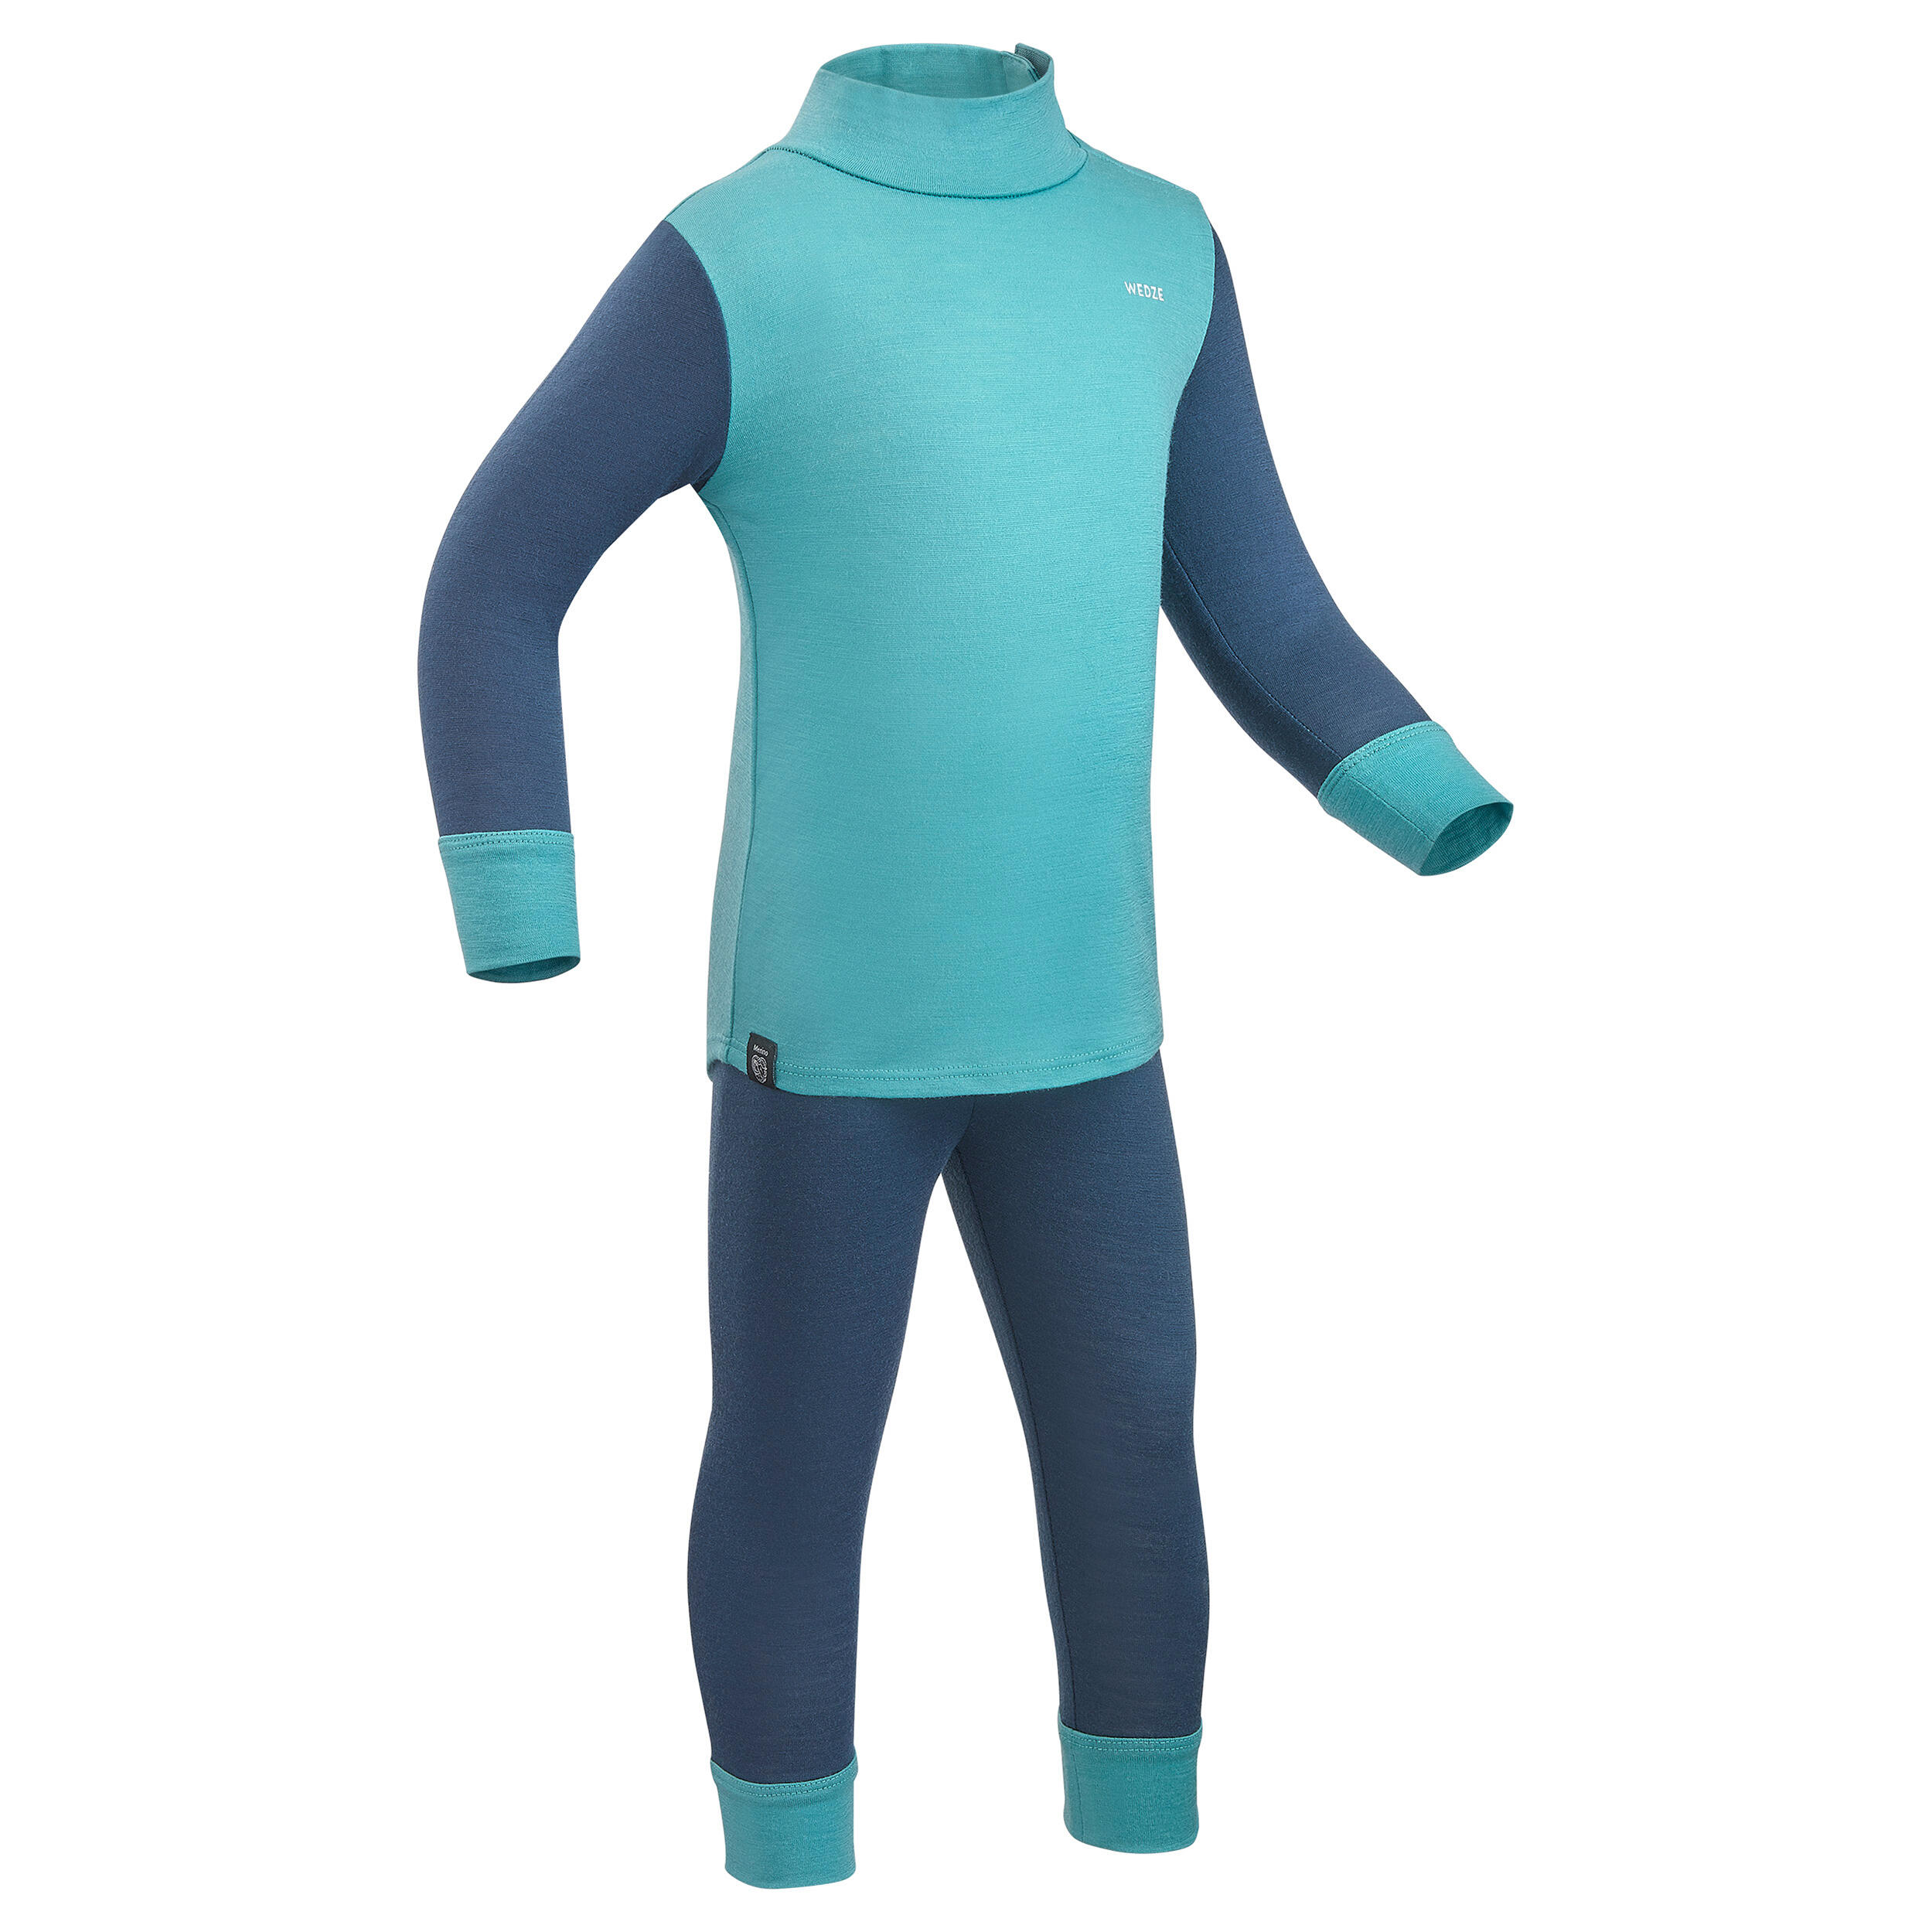 Baby ski base layer top, undershirt merino wool MERIWARM turquoise 8/11